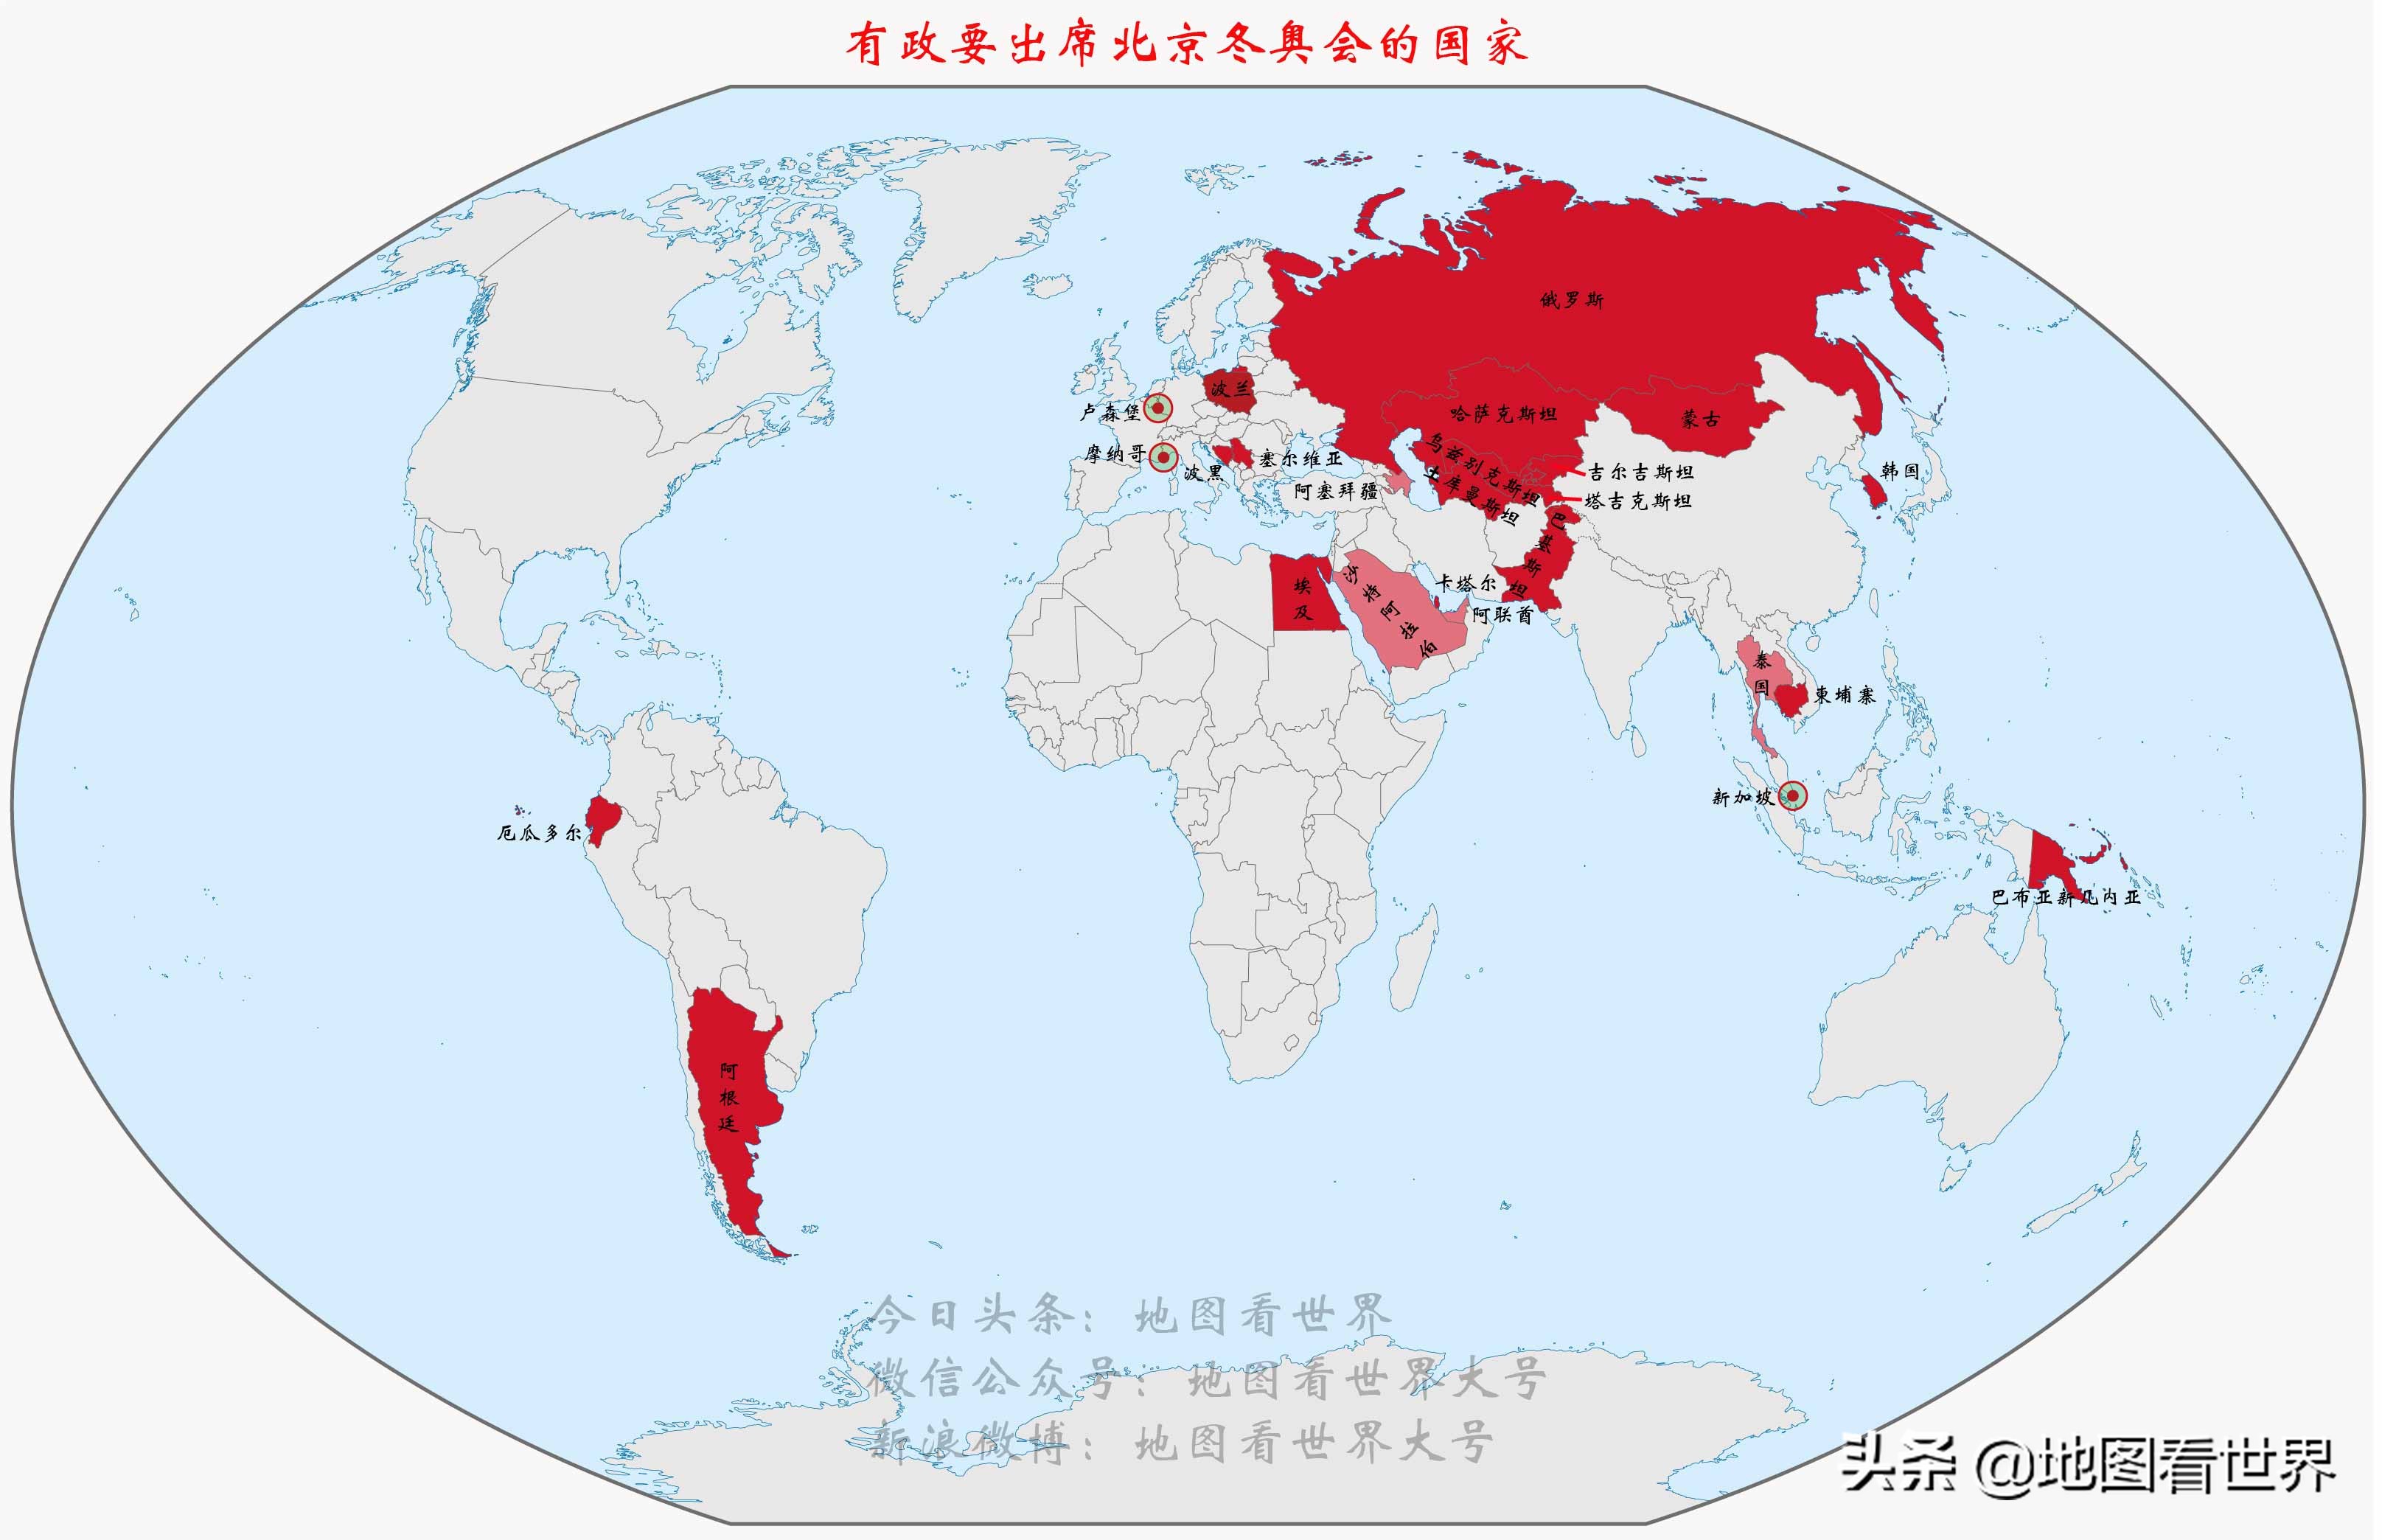 哪些国家的政府首脑或王室成员出席北京冬奥会？这些国家在哪里？